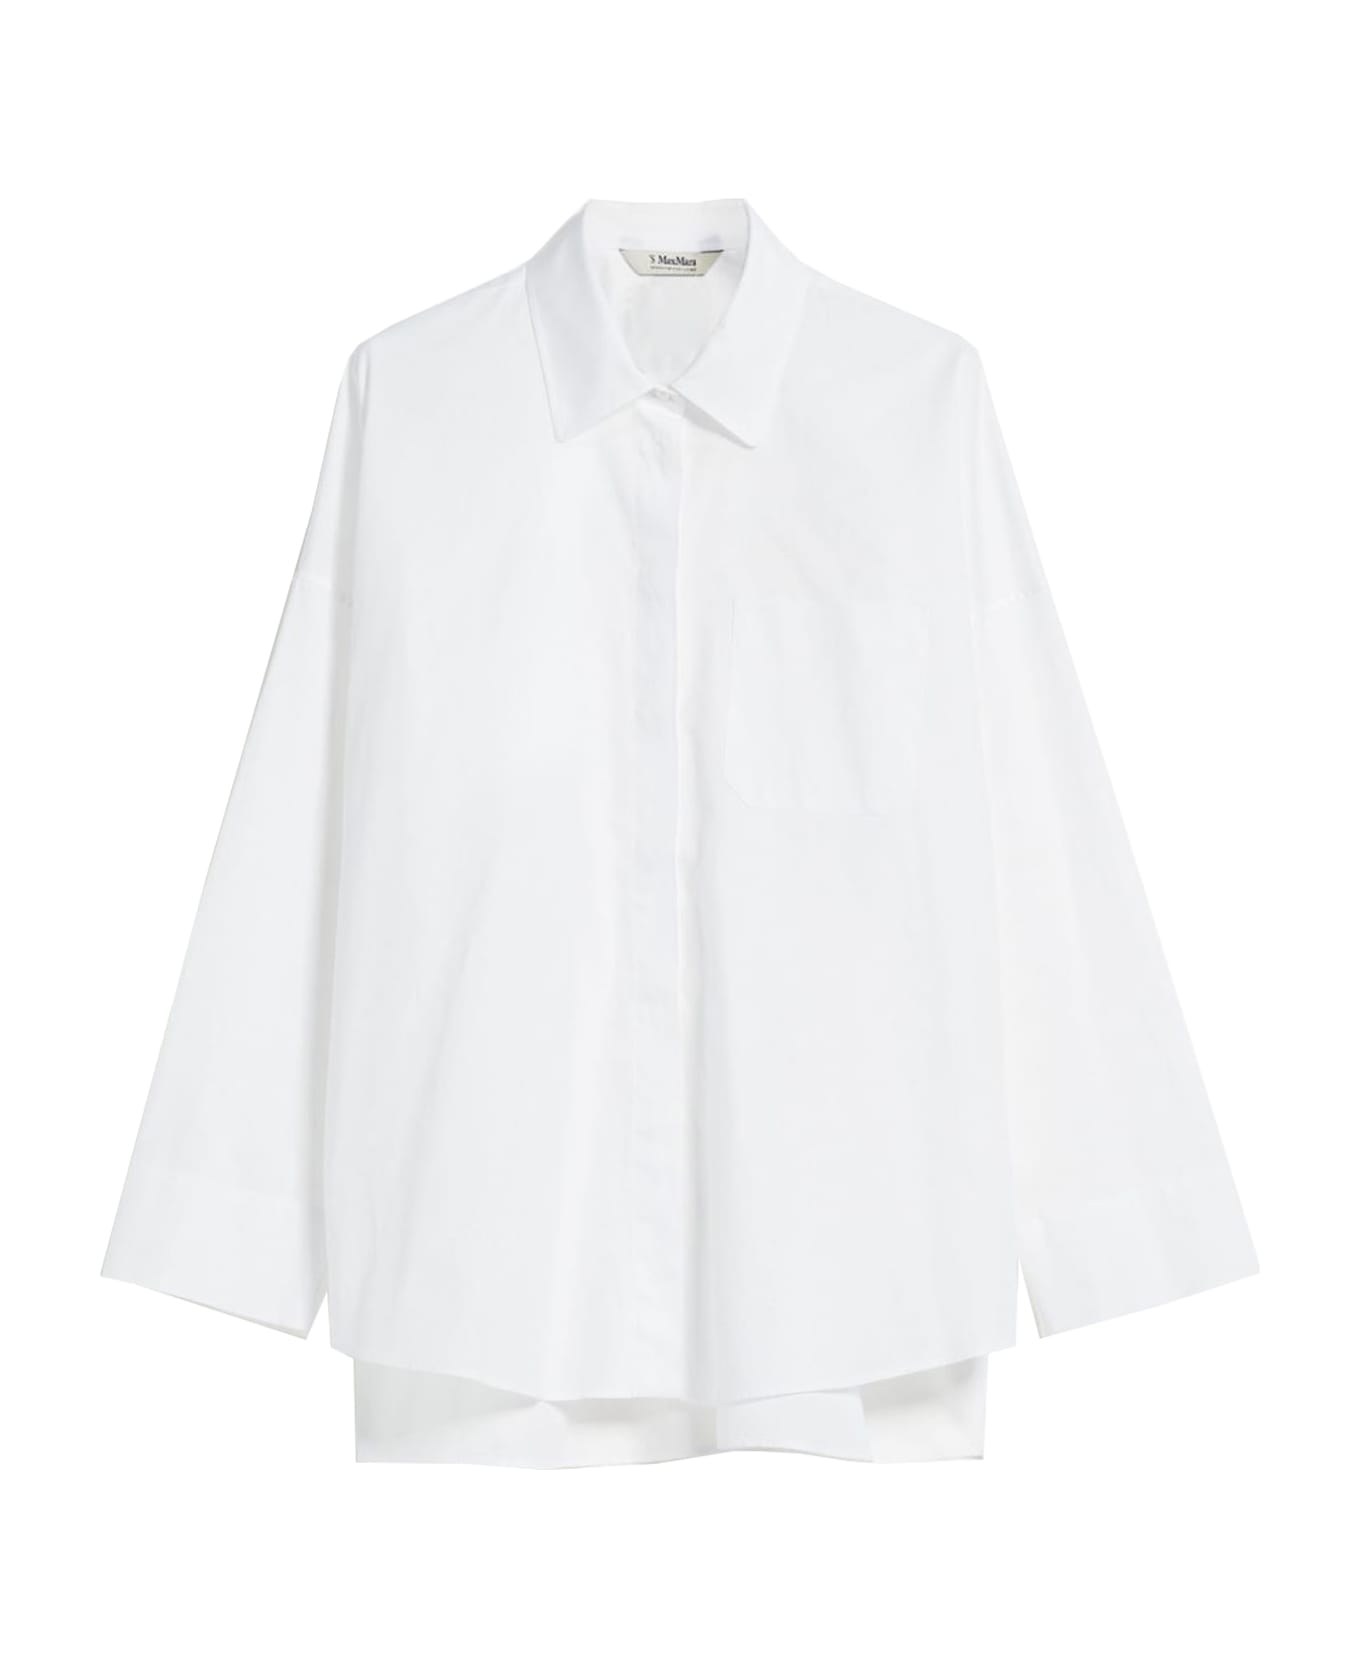 'S Max Mara Lodola Shirt - White シャツ